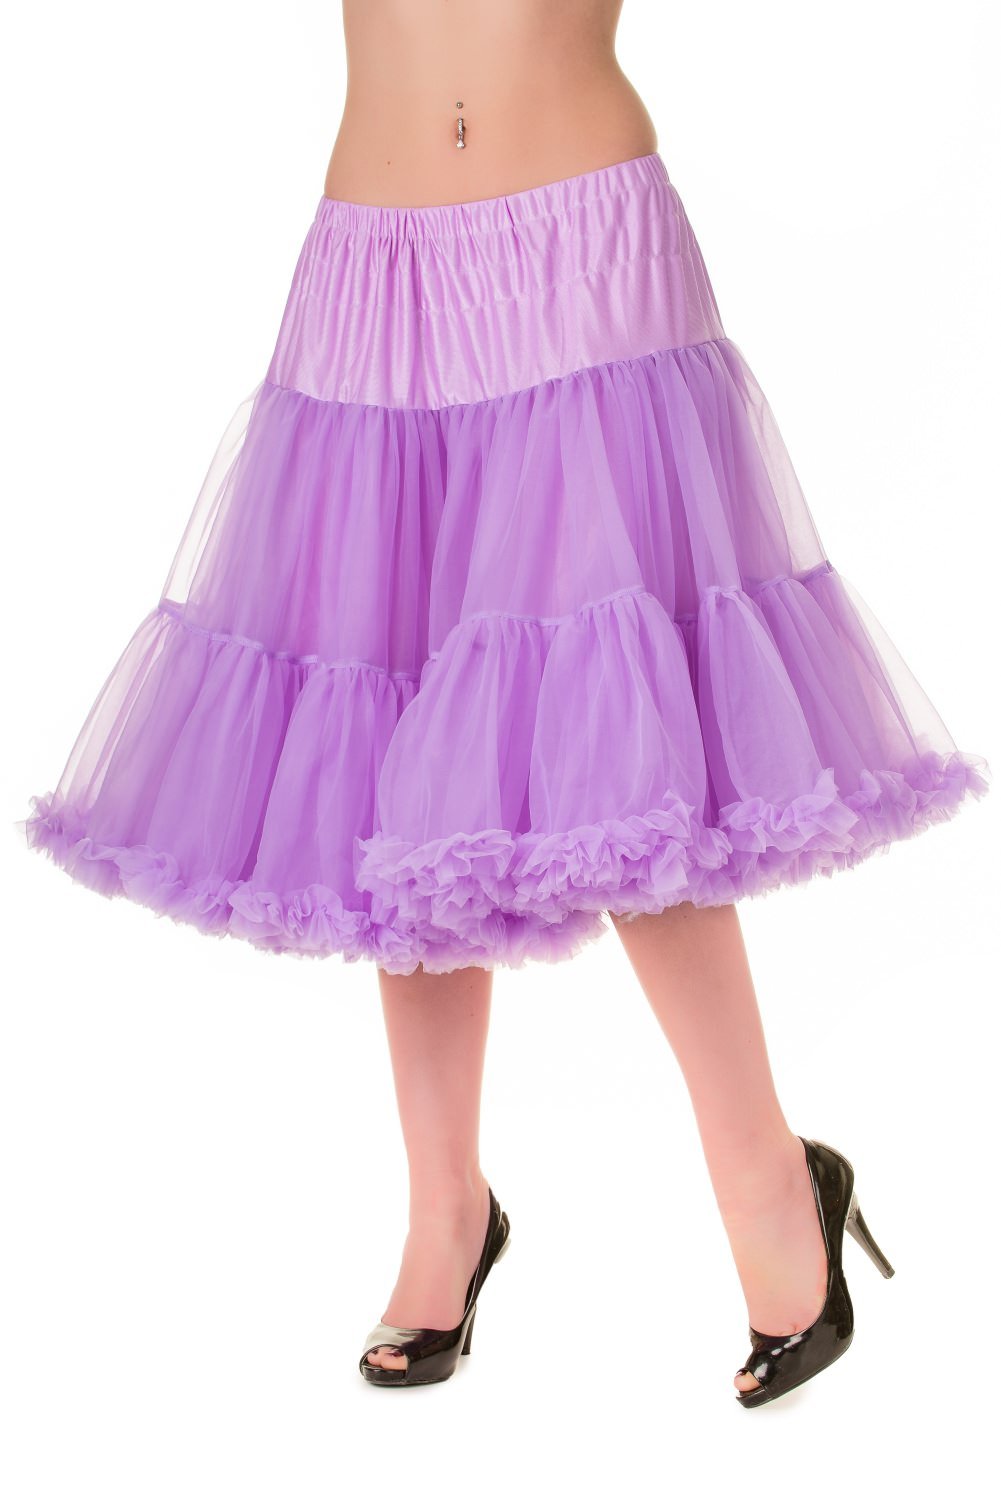 Banned SBN235 Starlite Petticoat Lavender